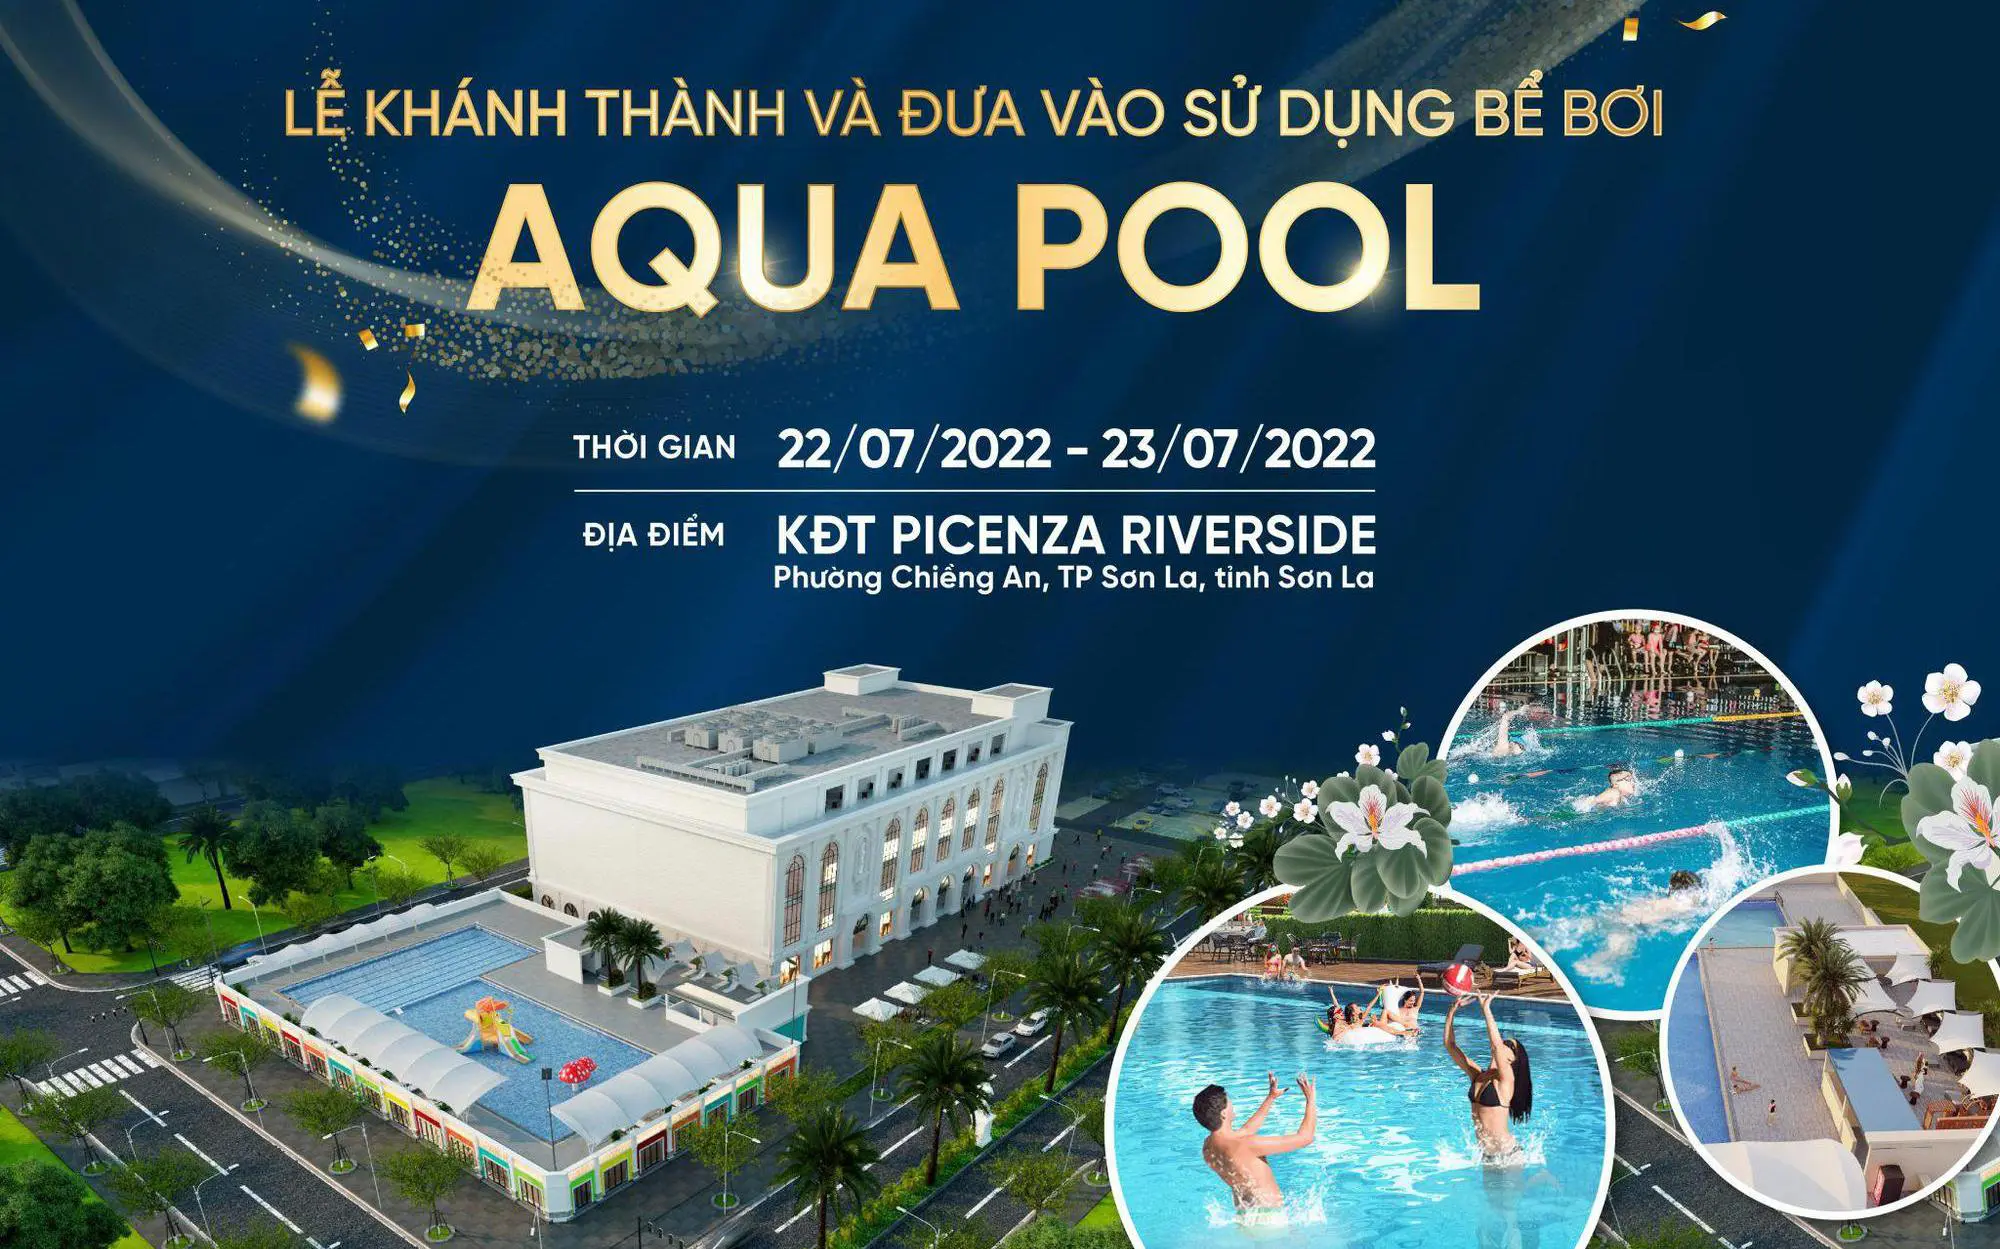 Picenza Riverside khánh thành bể bơi Aqua Pool đẳng cấp bậc nhất Sơn La với loạt sự kiện sôi động trong 2 ngày 22 và 23/7/2022